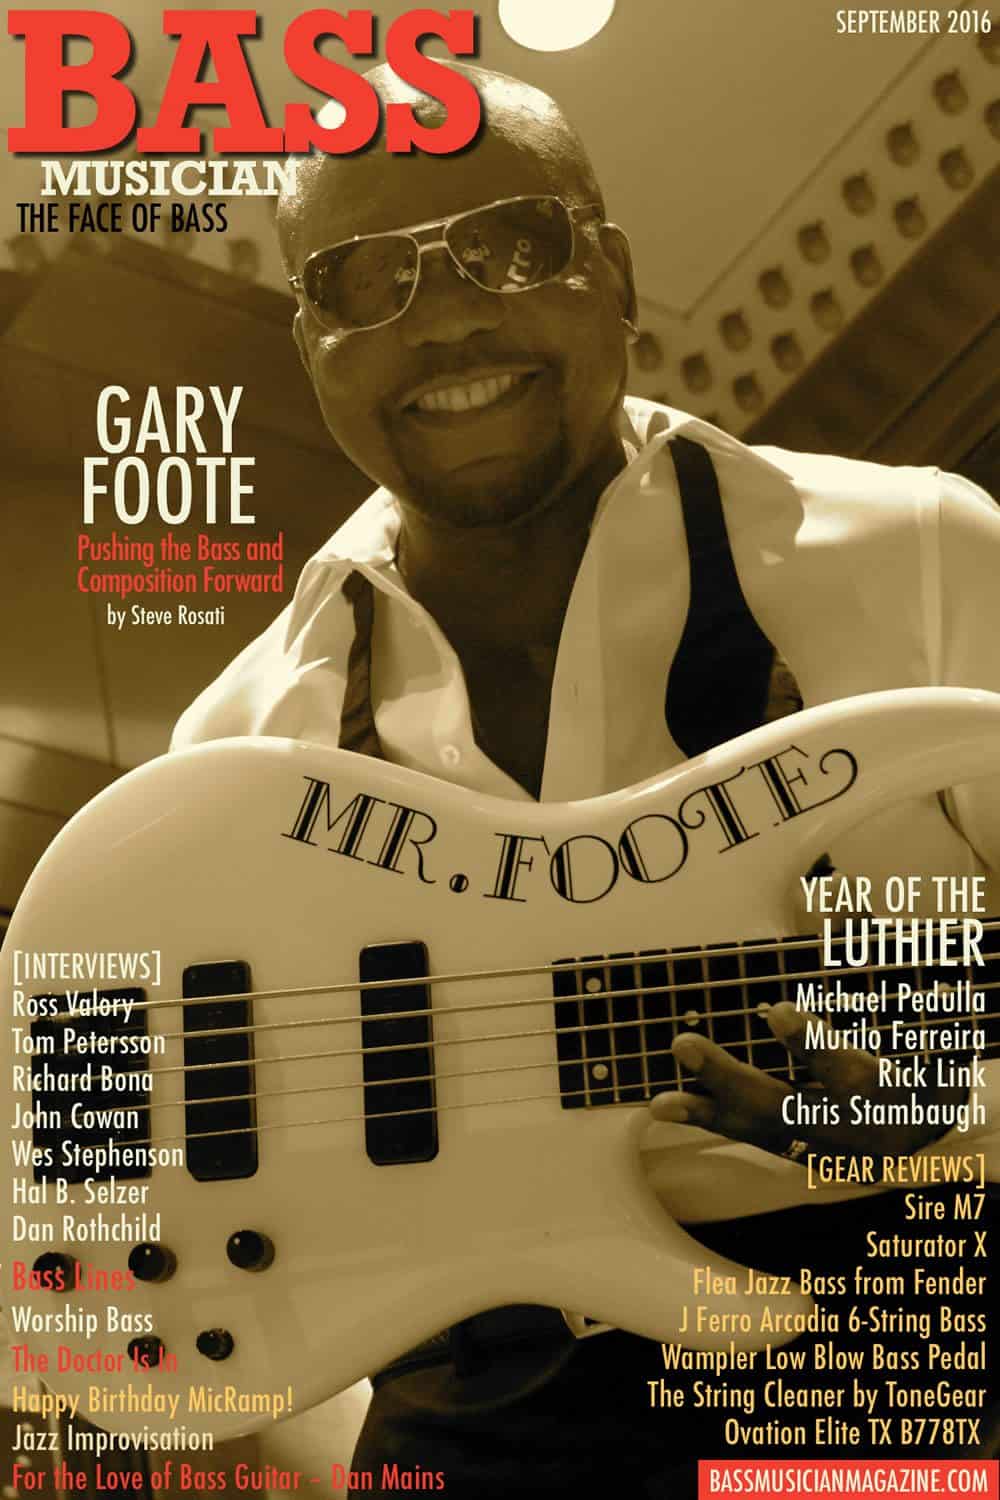 Bass Musician Magazine - Gary Foote - September 2016